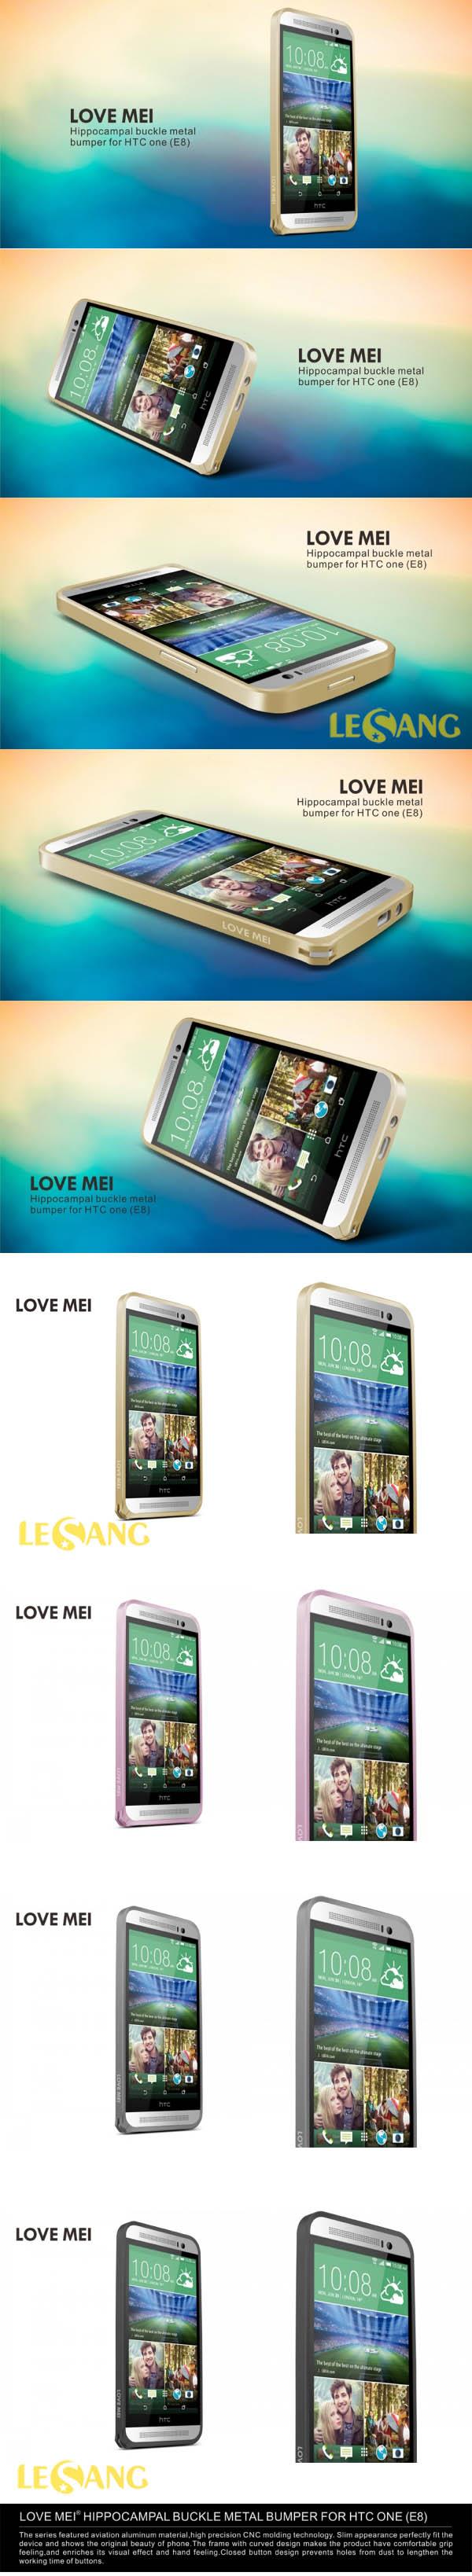 PK Ốp HTC E8 Isen 1